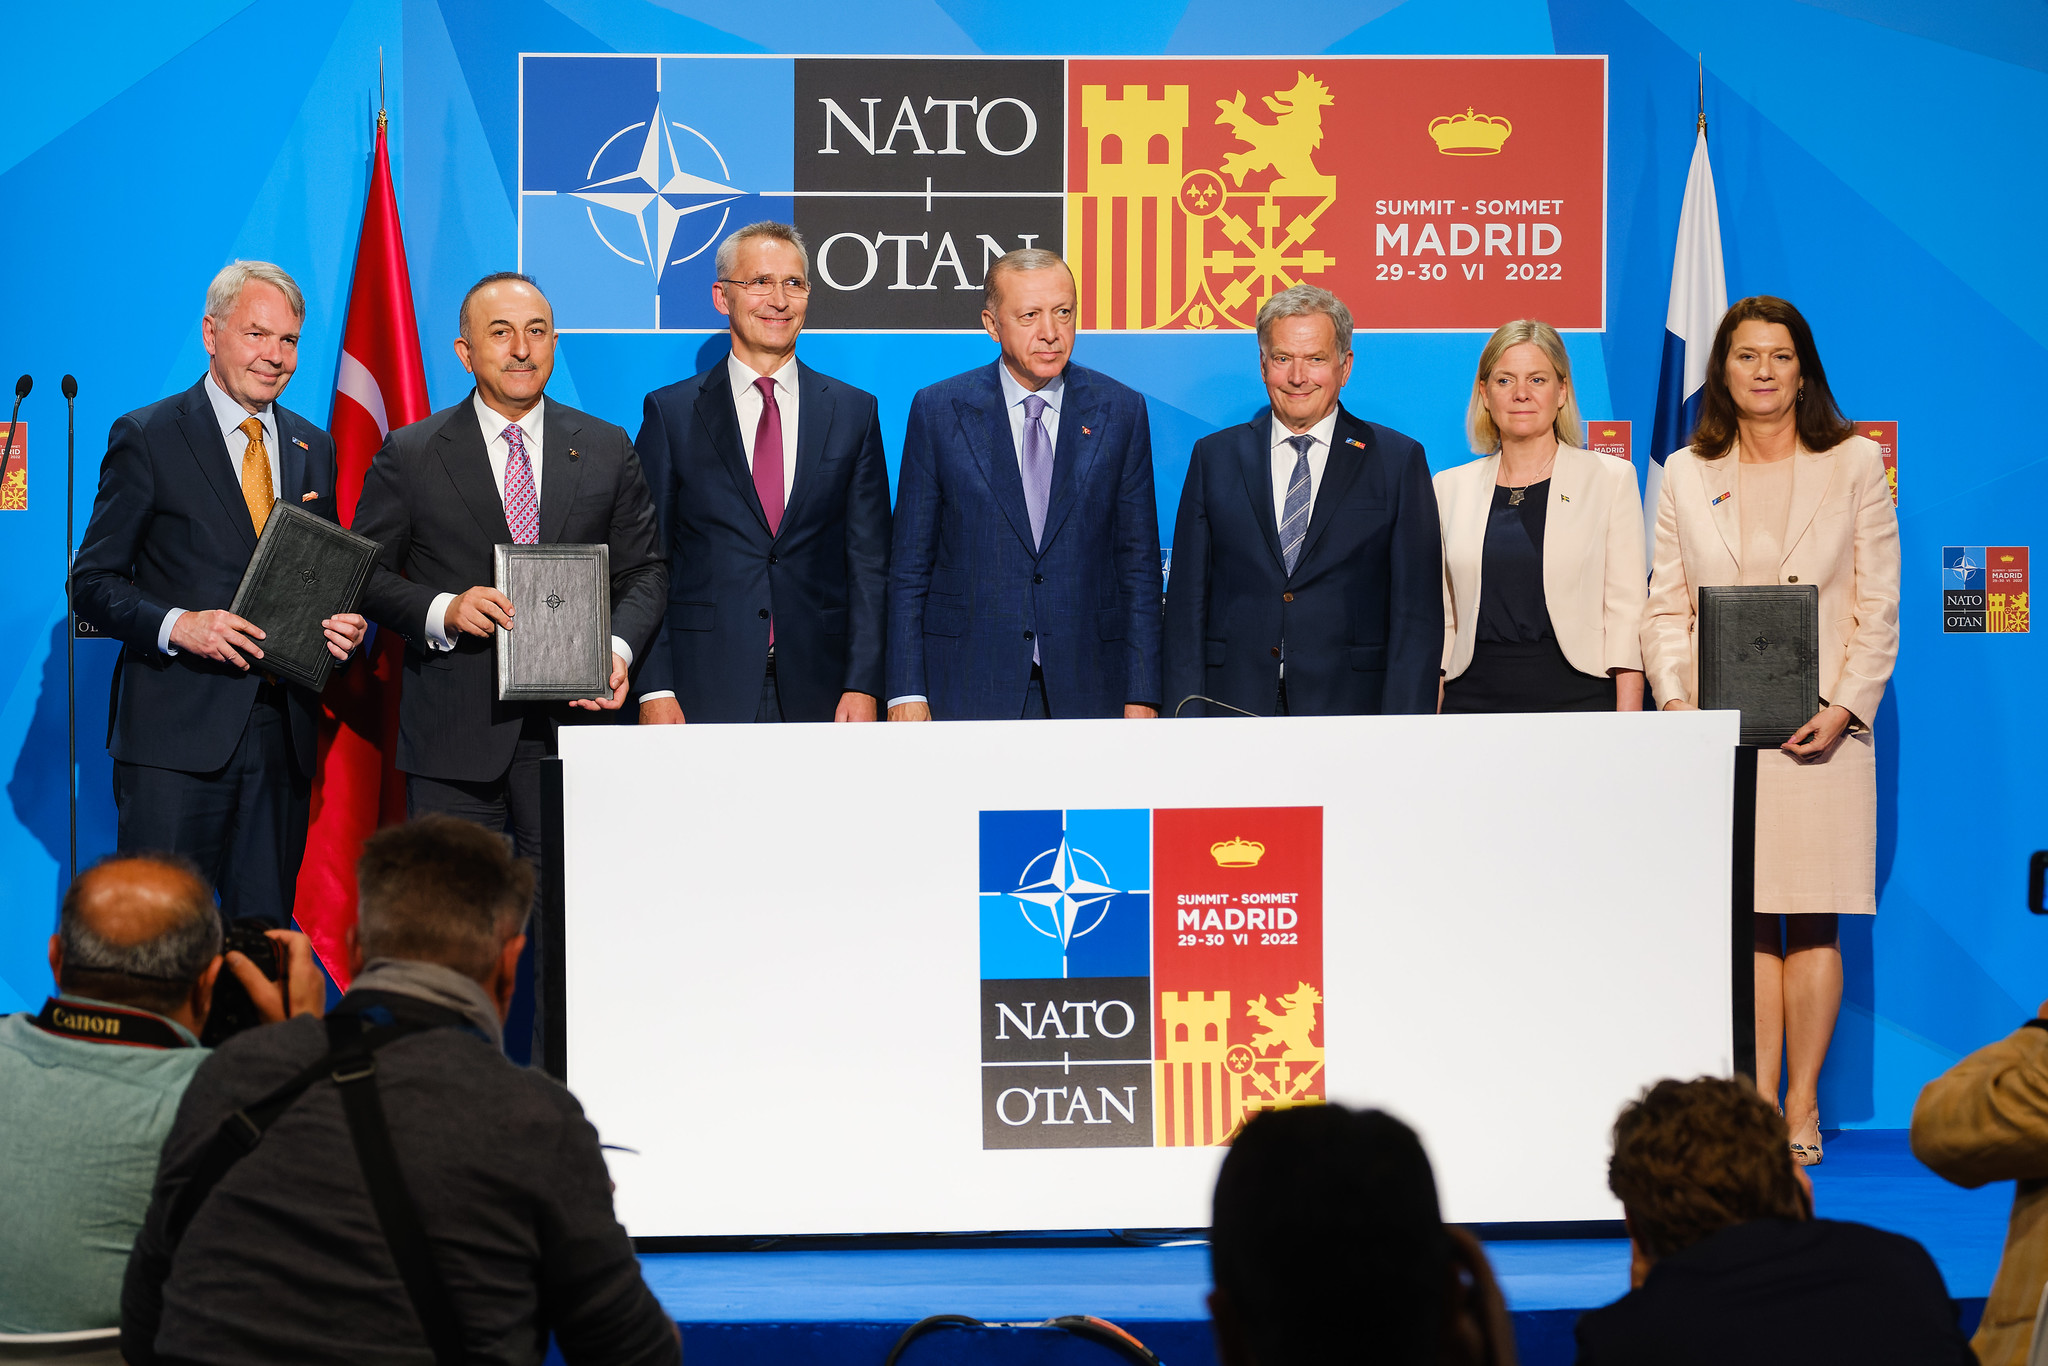 Nessun baratto tra diritti umani e ombrello militare della NATO